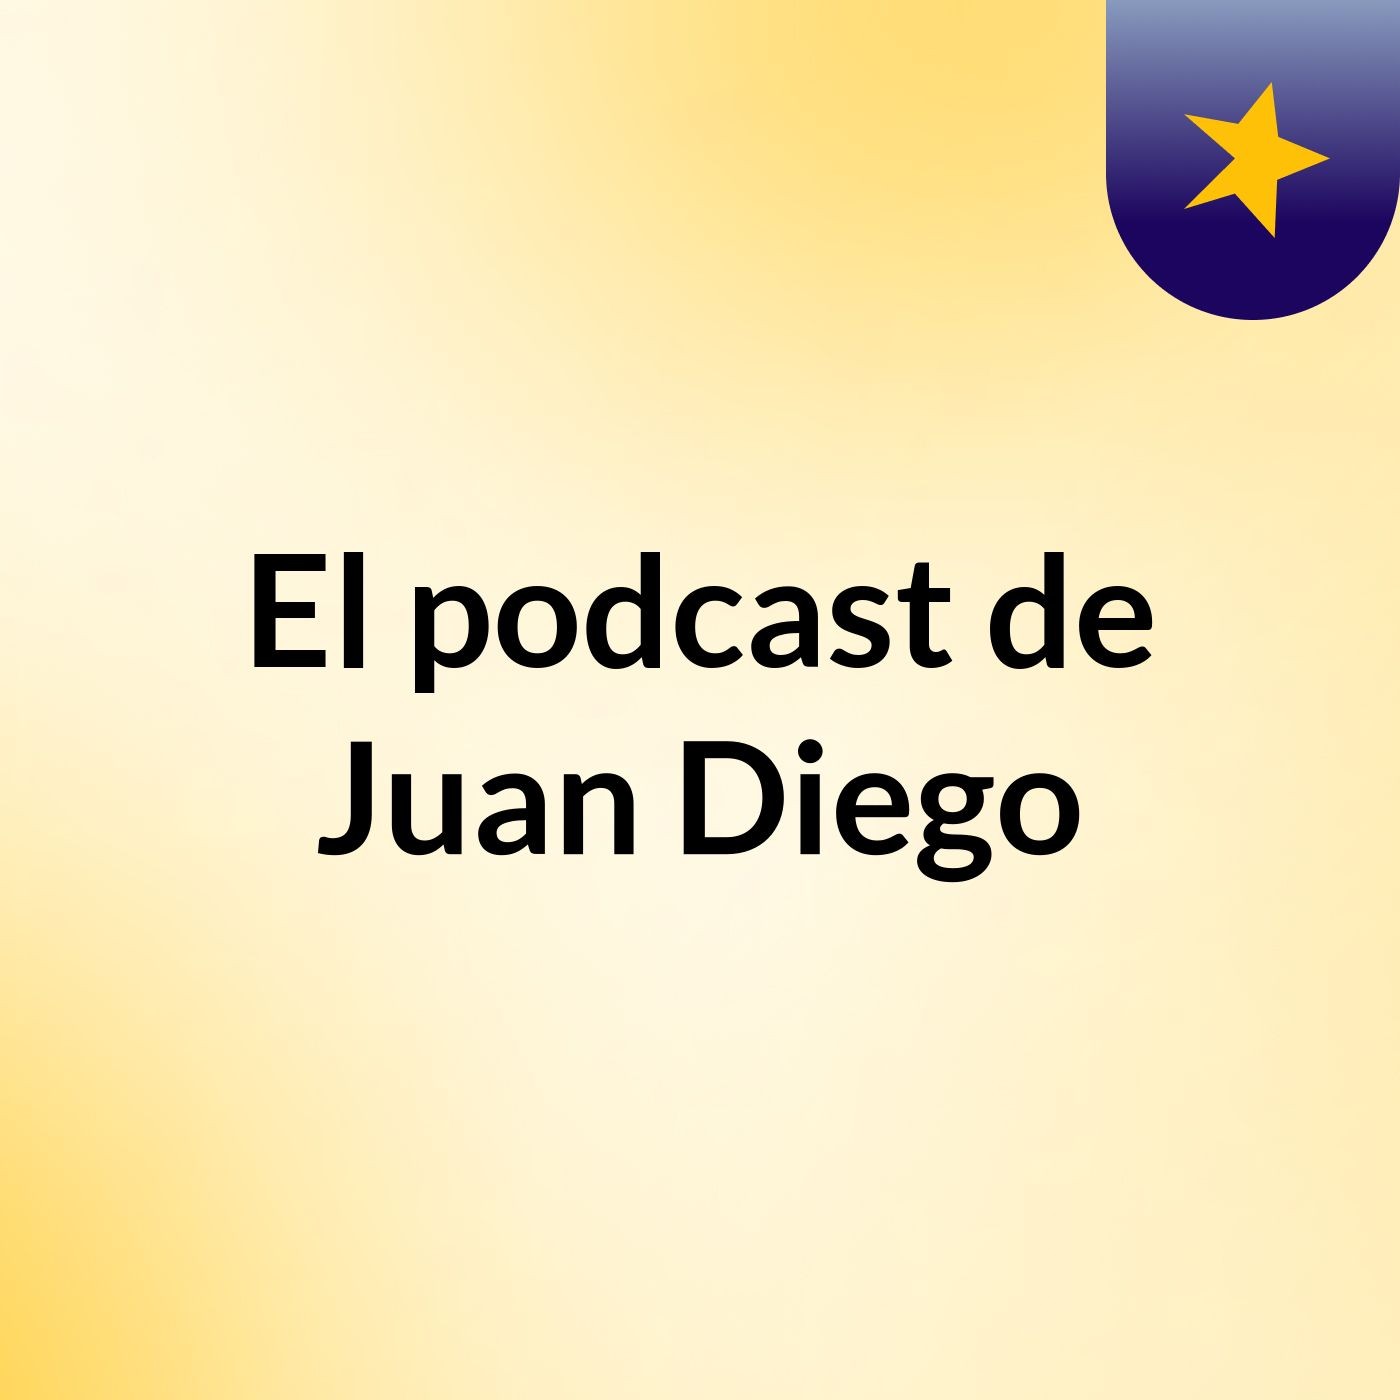 El podcast de Juan Diego